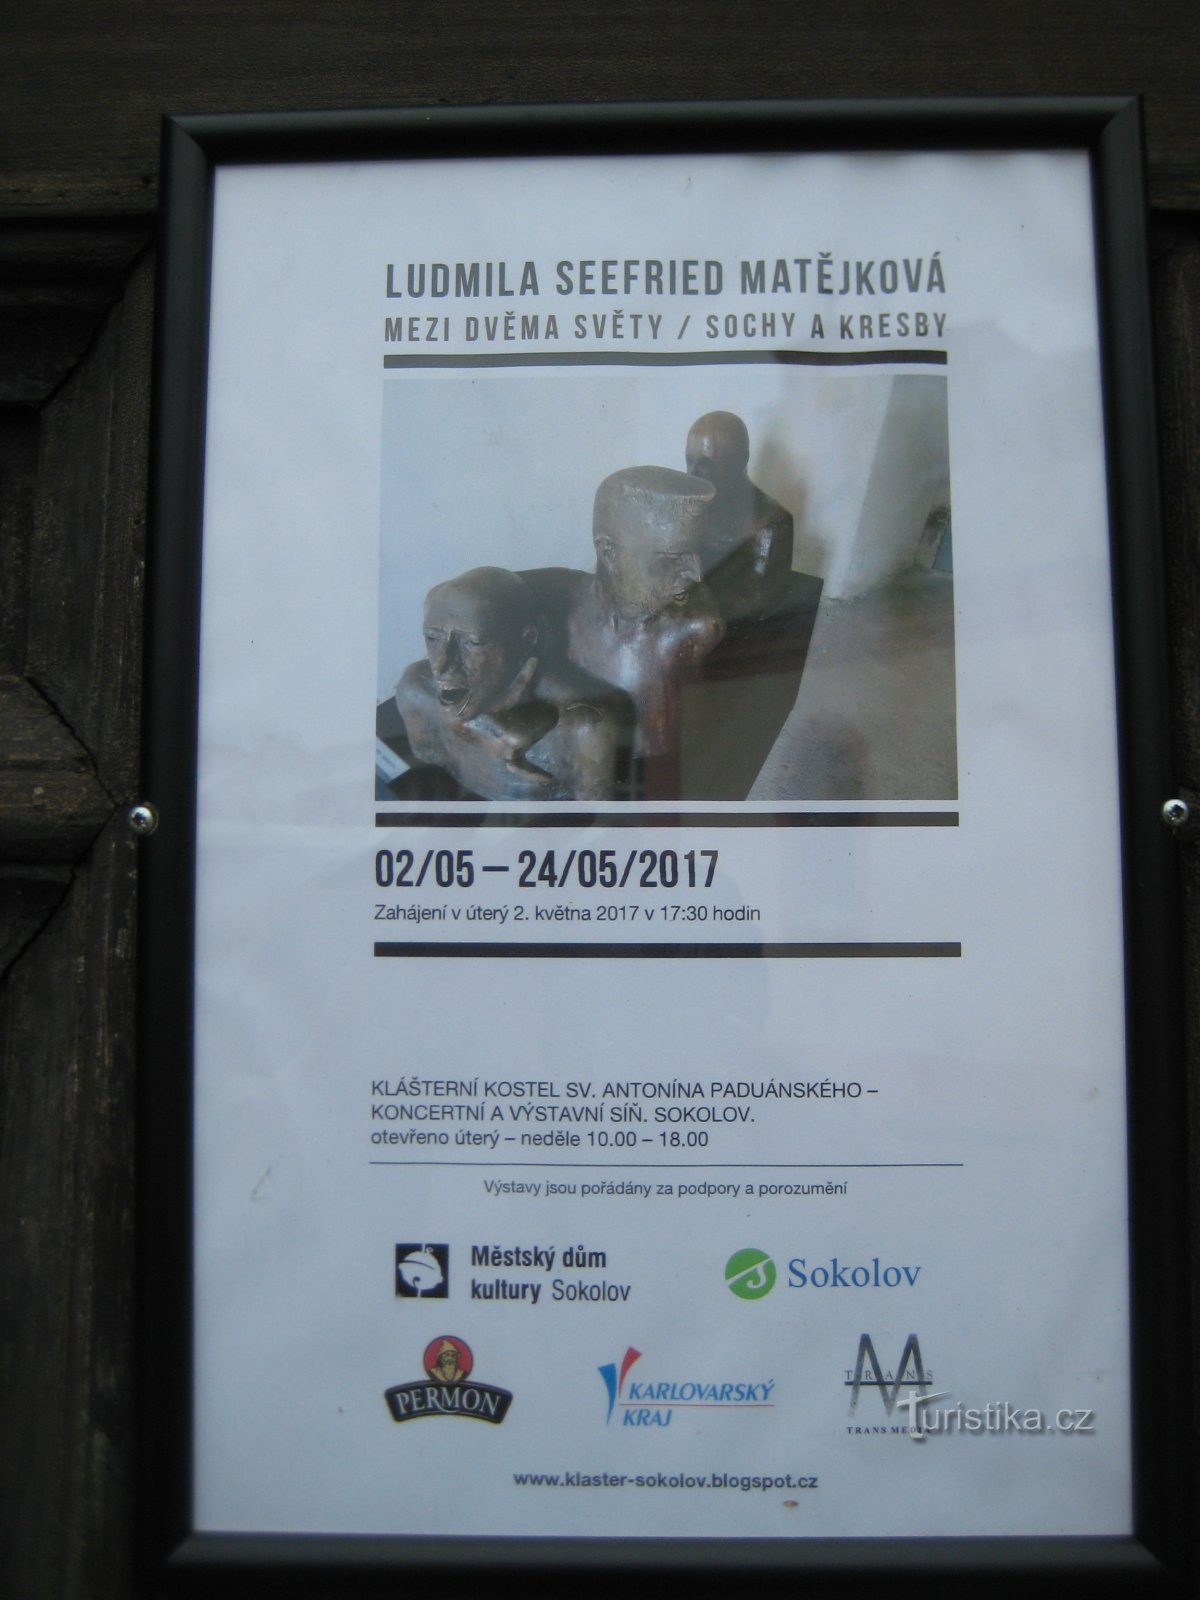 Wystawa Między dwoma światami - Ludmila Seefried Matějková - Sokolov